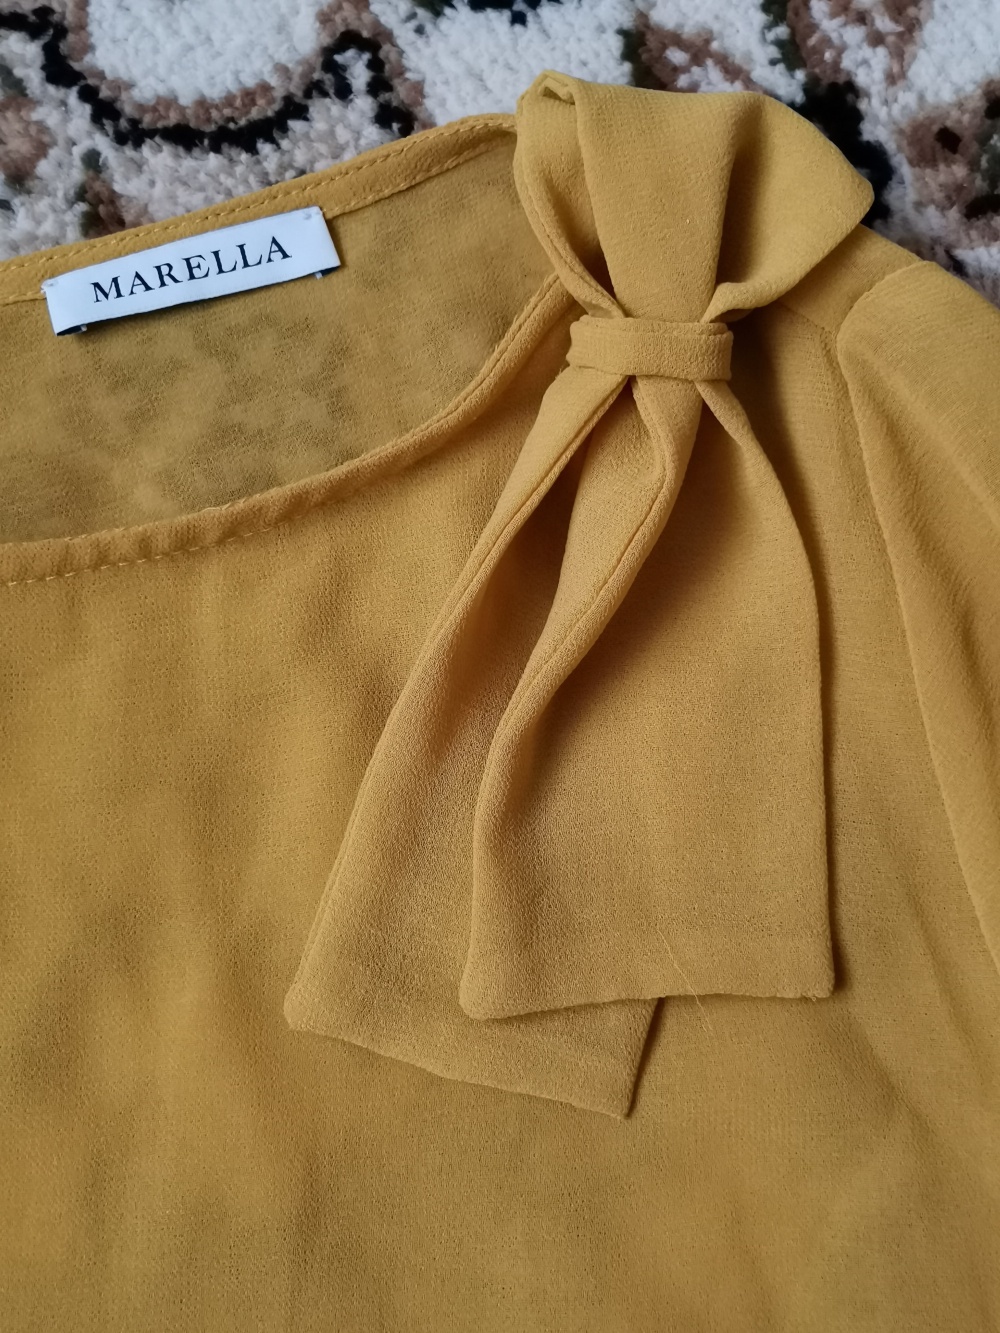 Блузка Marella, размер 42-44,44 росс.